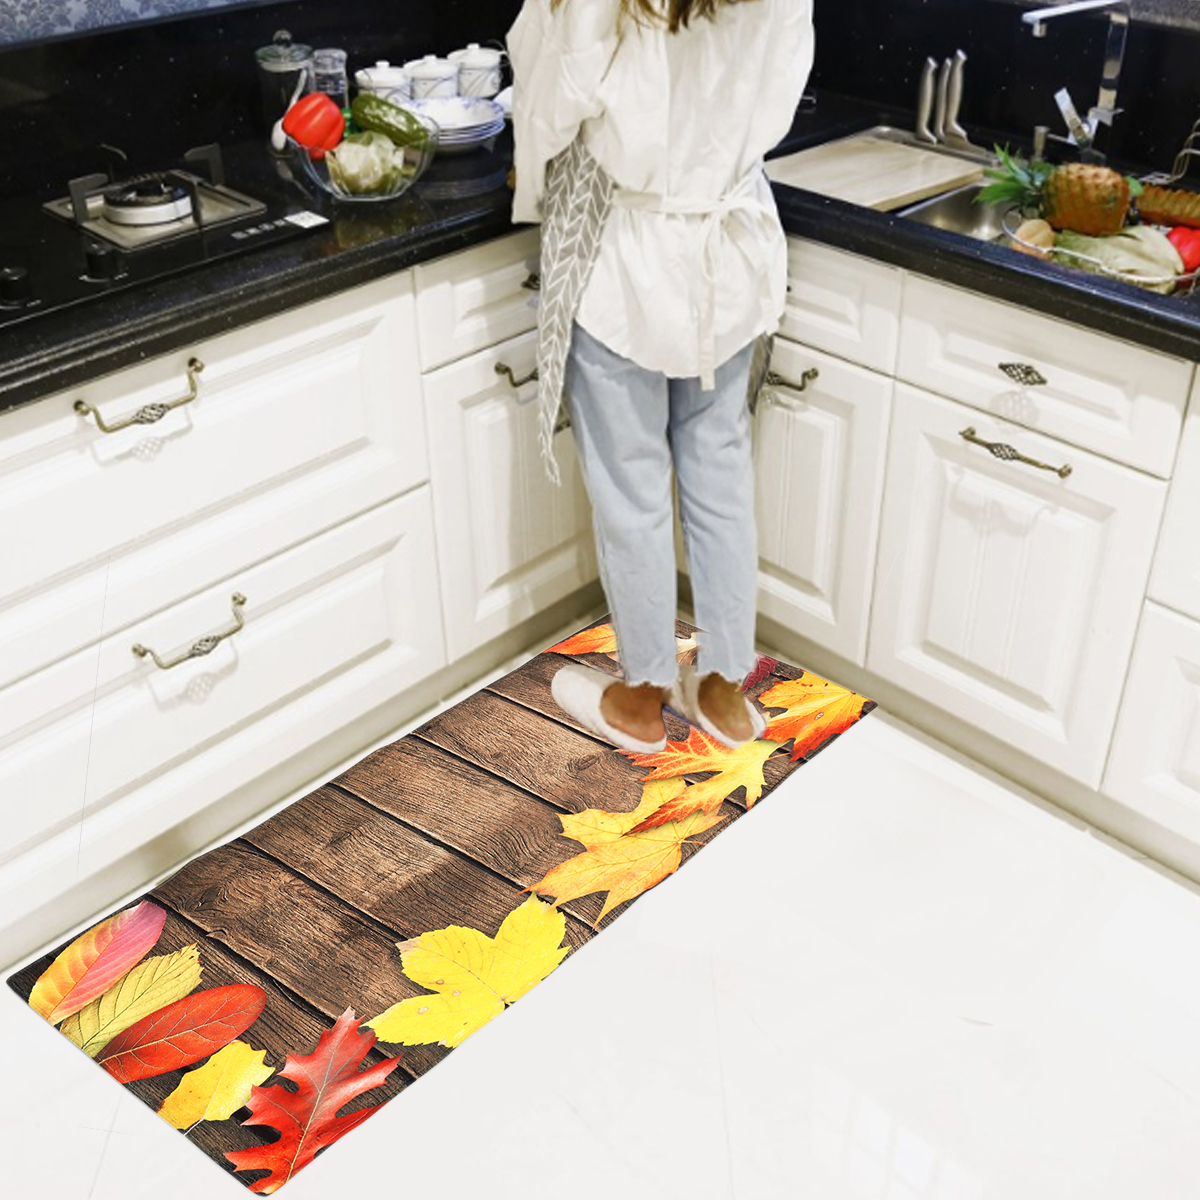 180cm Non-Slip Home Kitchen Bedroom Floor Mat Rug Door Flannel Carpet Washable